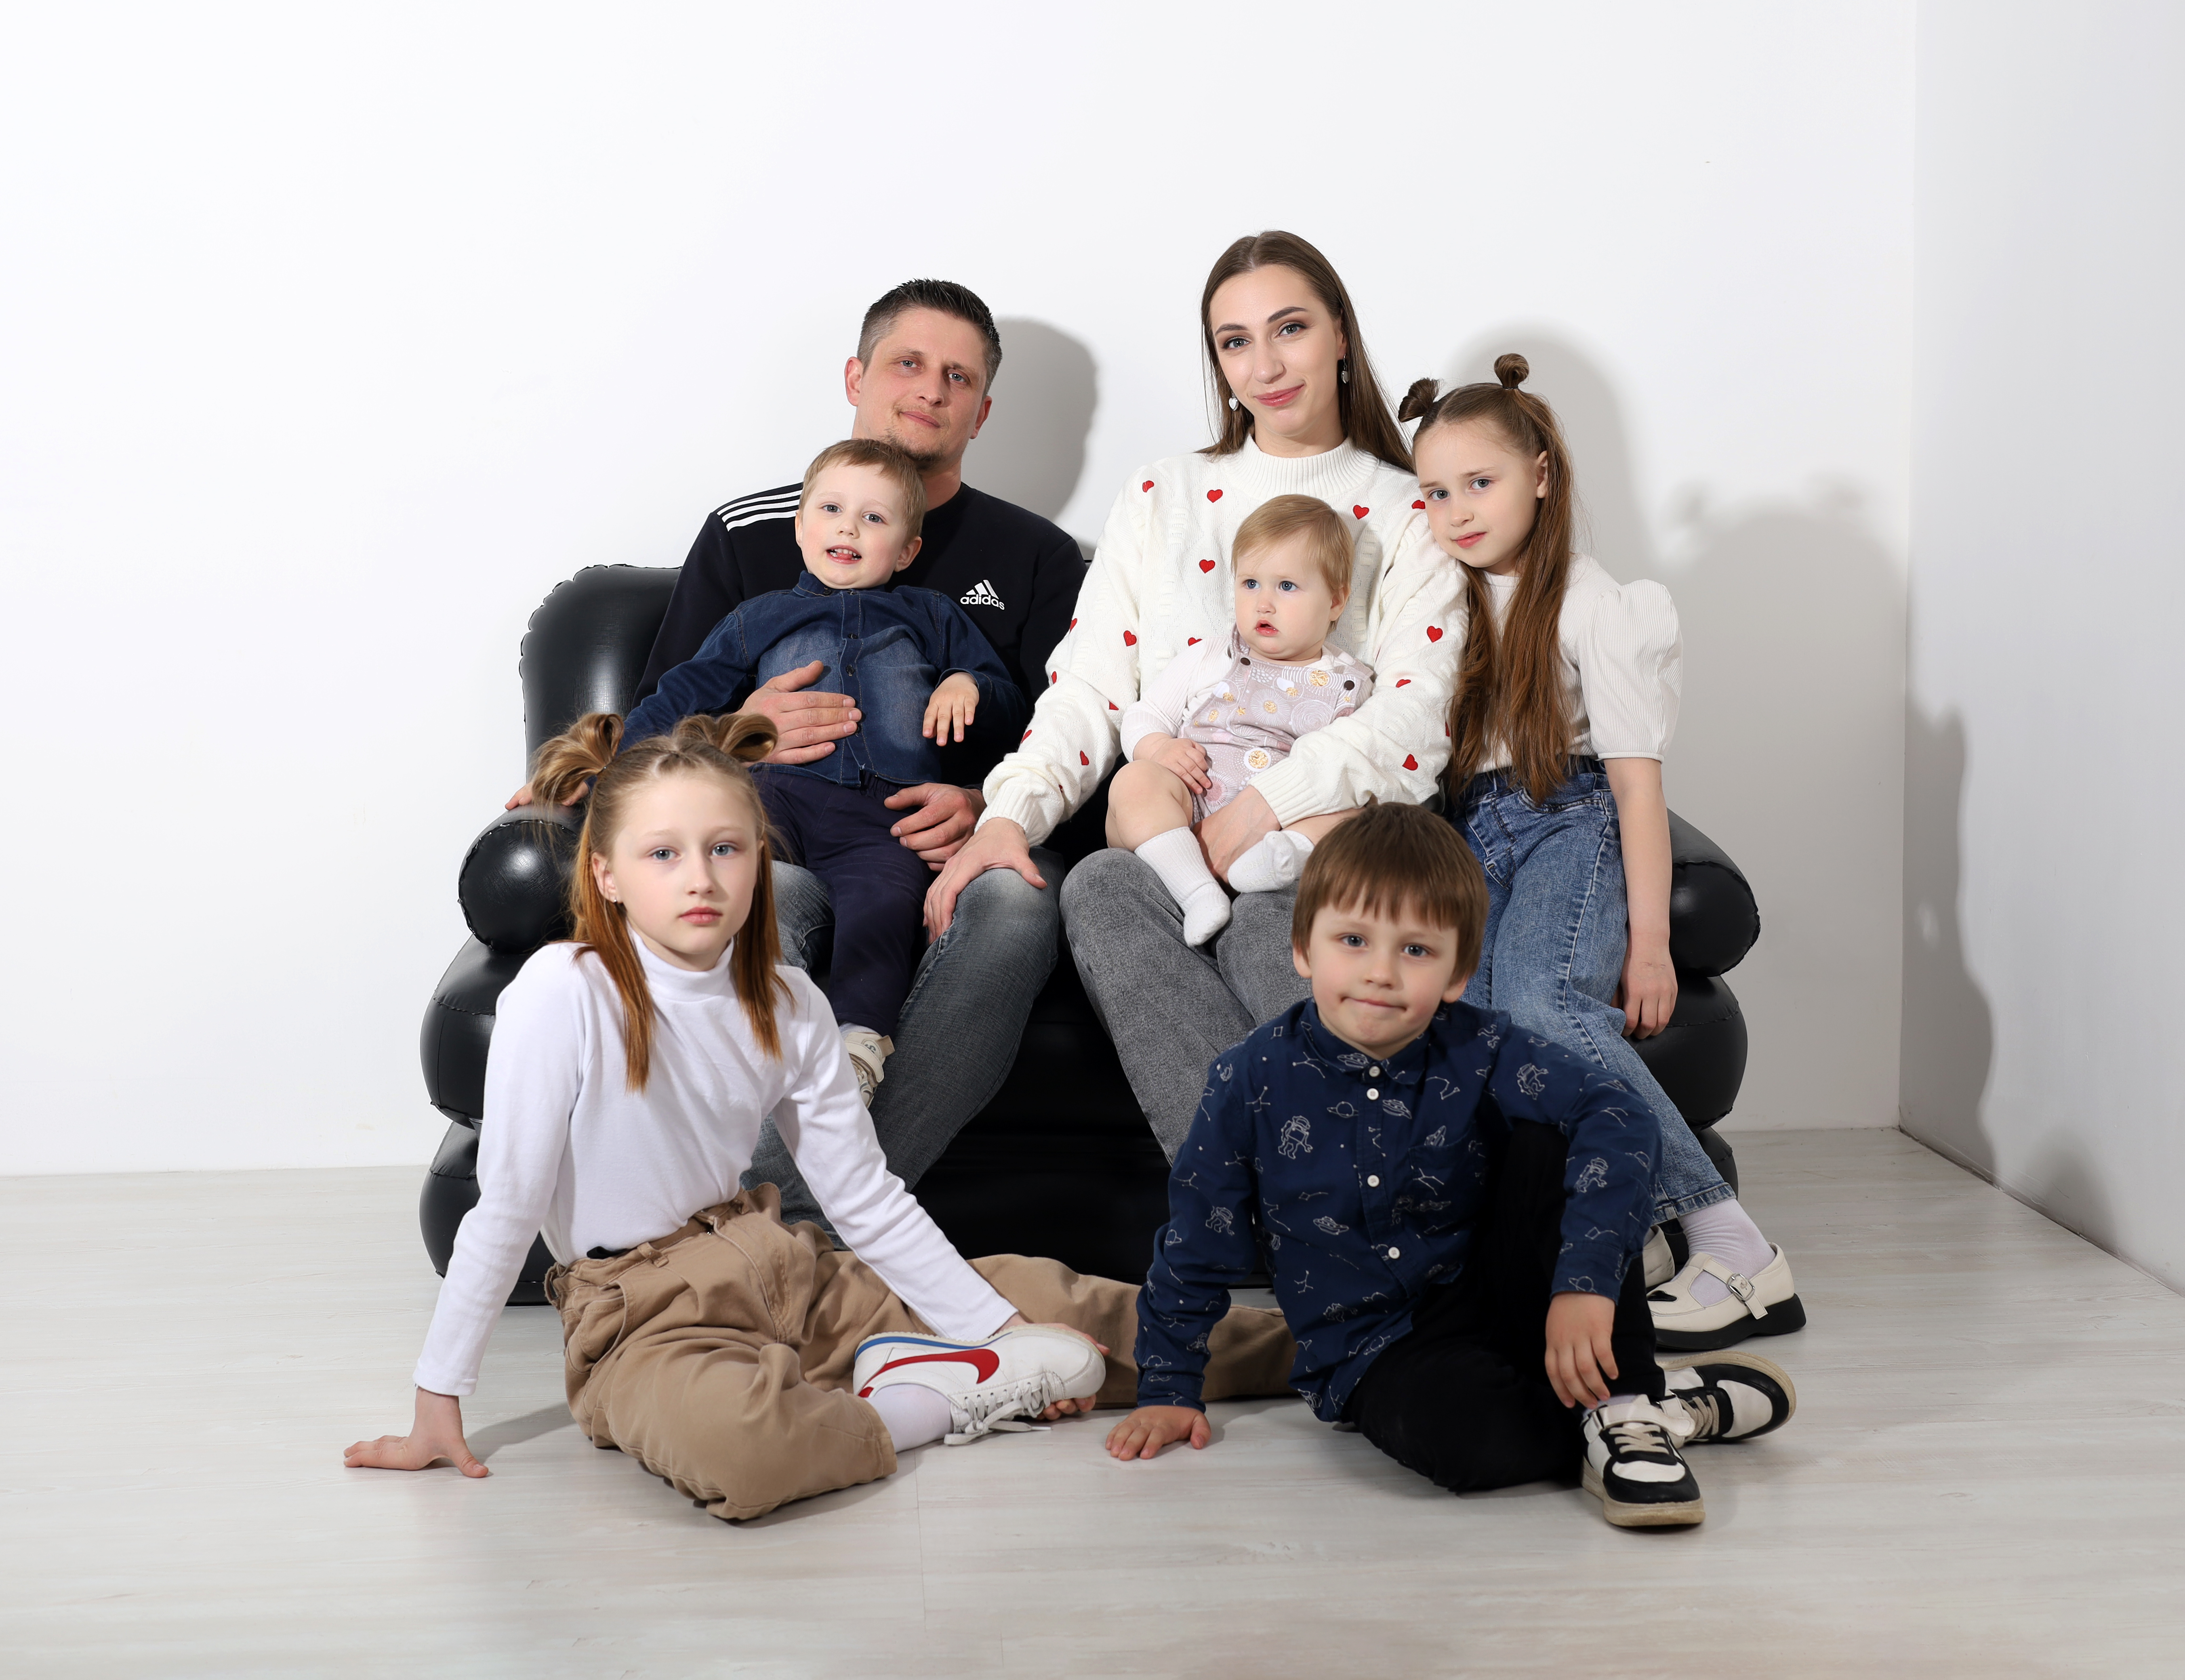 Вологжане могут поддержать семью Фешкиных из Кадуйского округа в конкурсе «Народная симпатия».